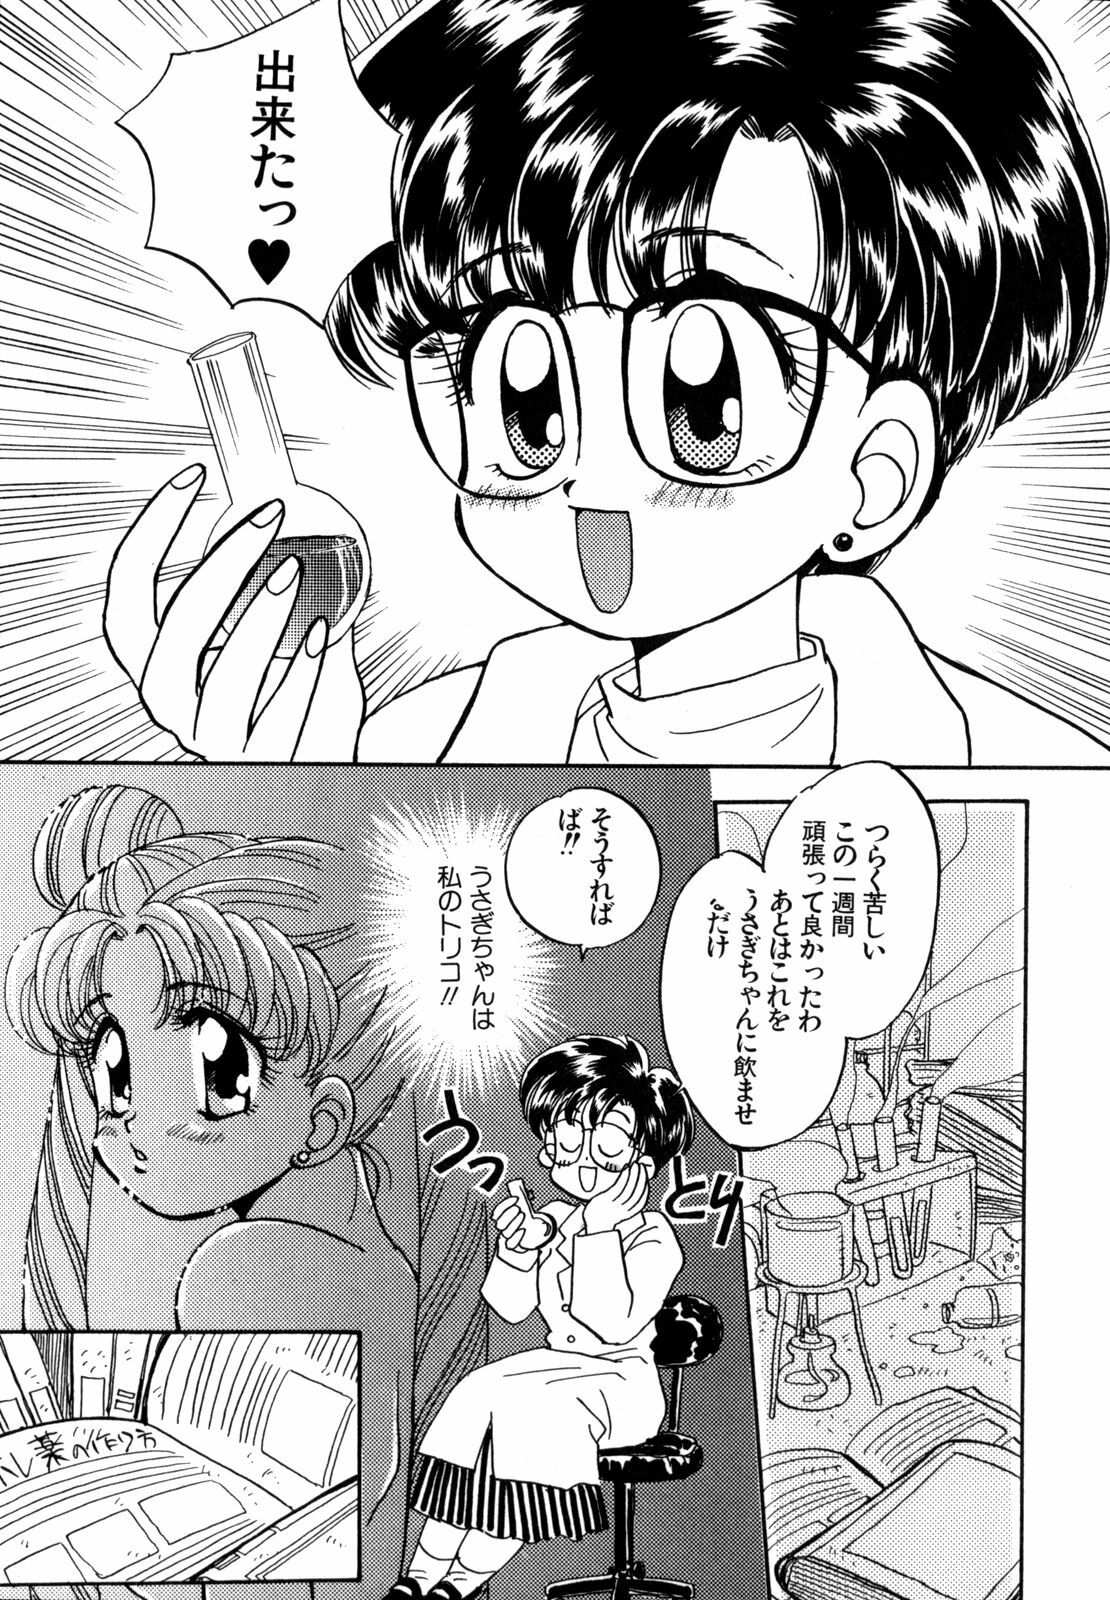 [Anthology] Lunatic Party 4 (Bishoujo Senshi Sailor Moon) page 28 full